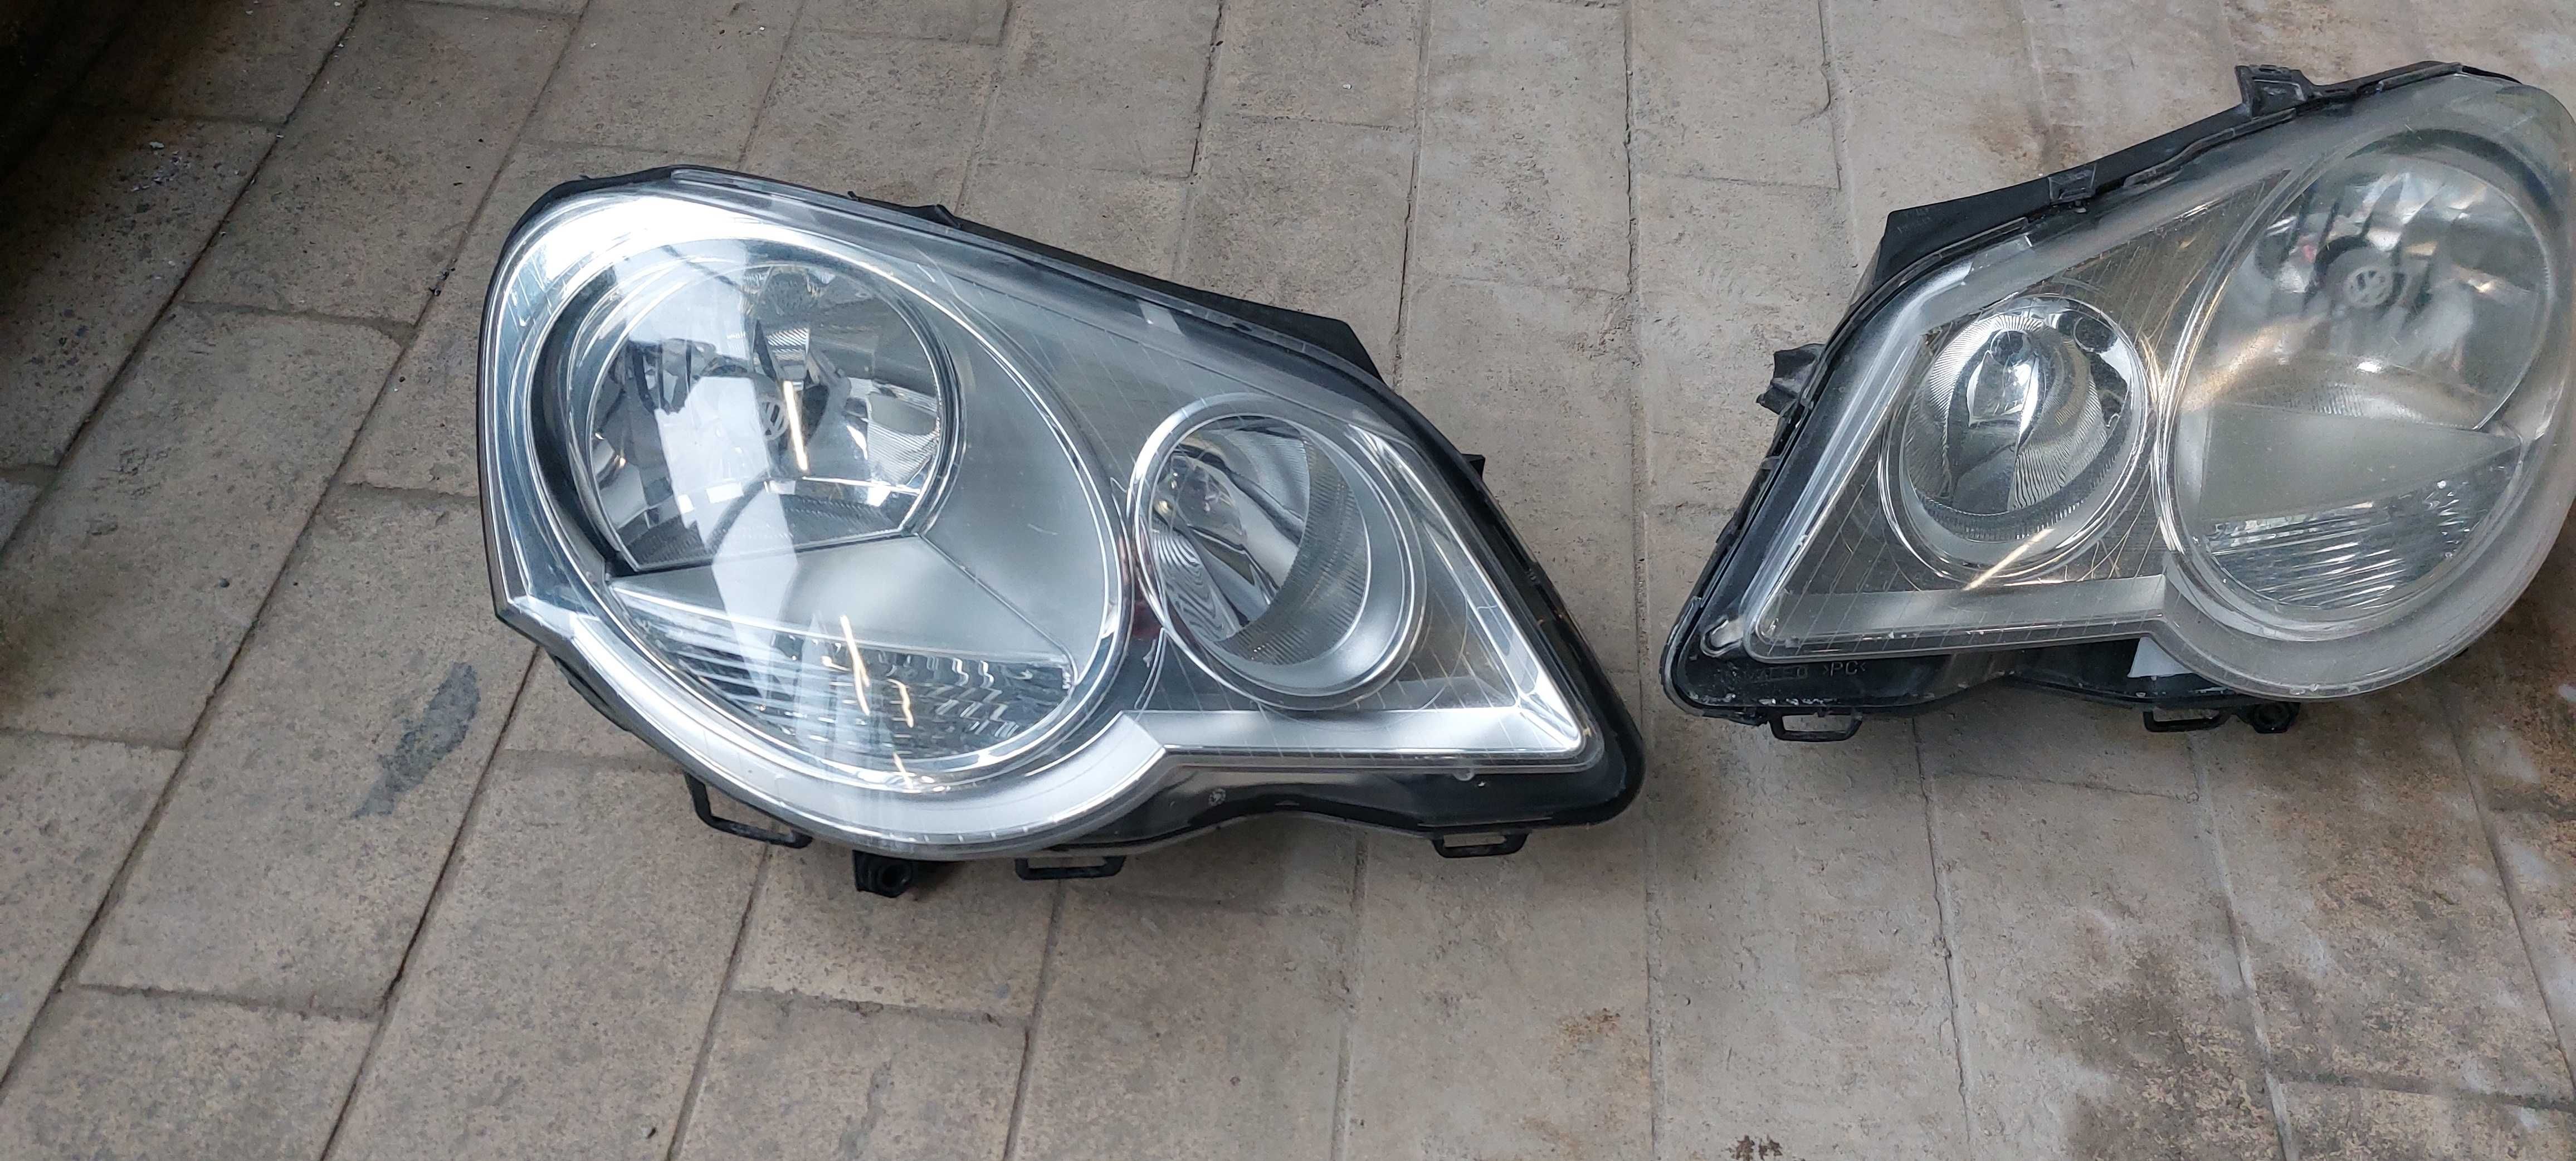 Lampy przednie VW Polo IV po liftingu